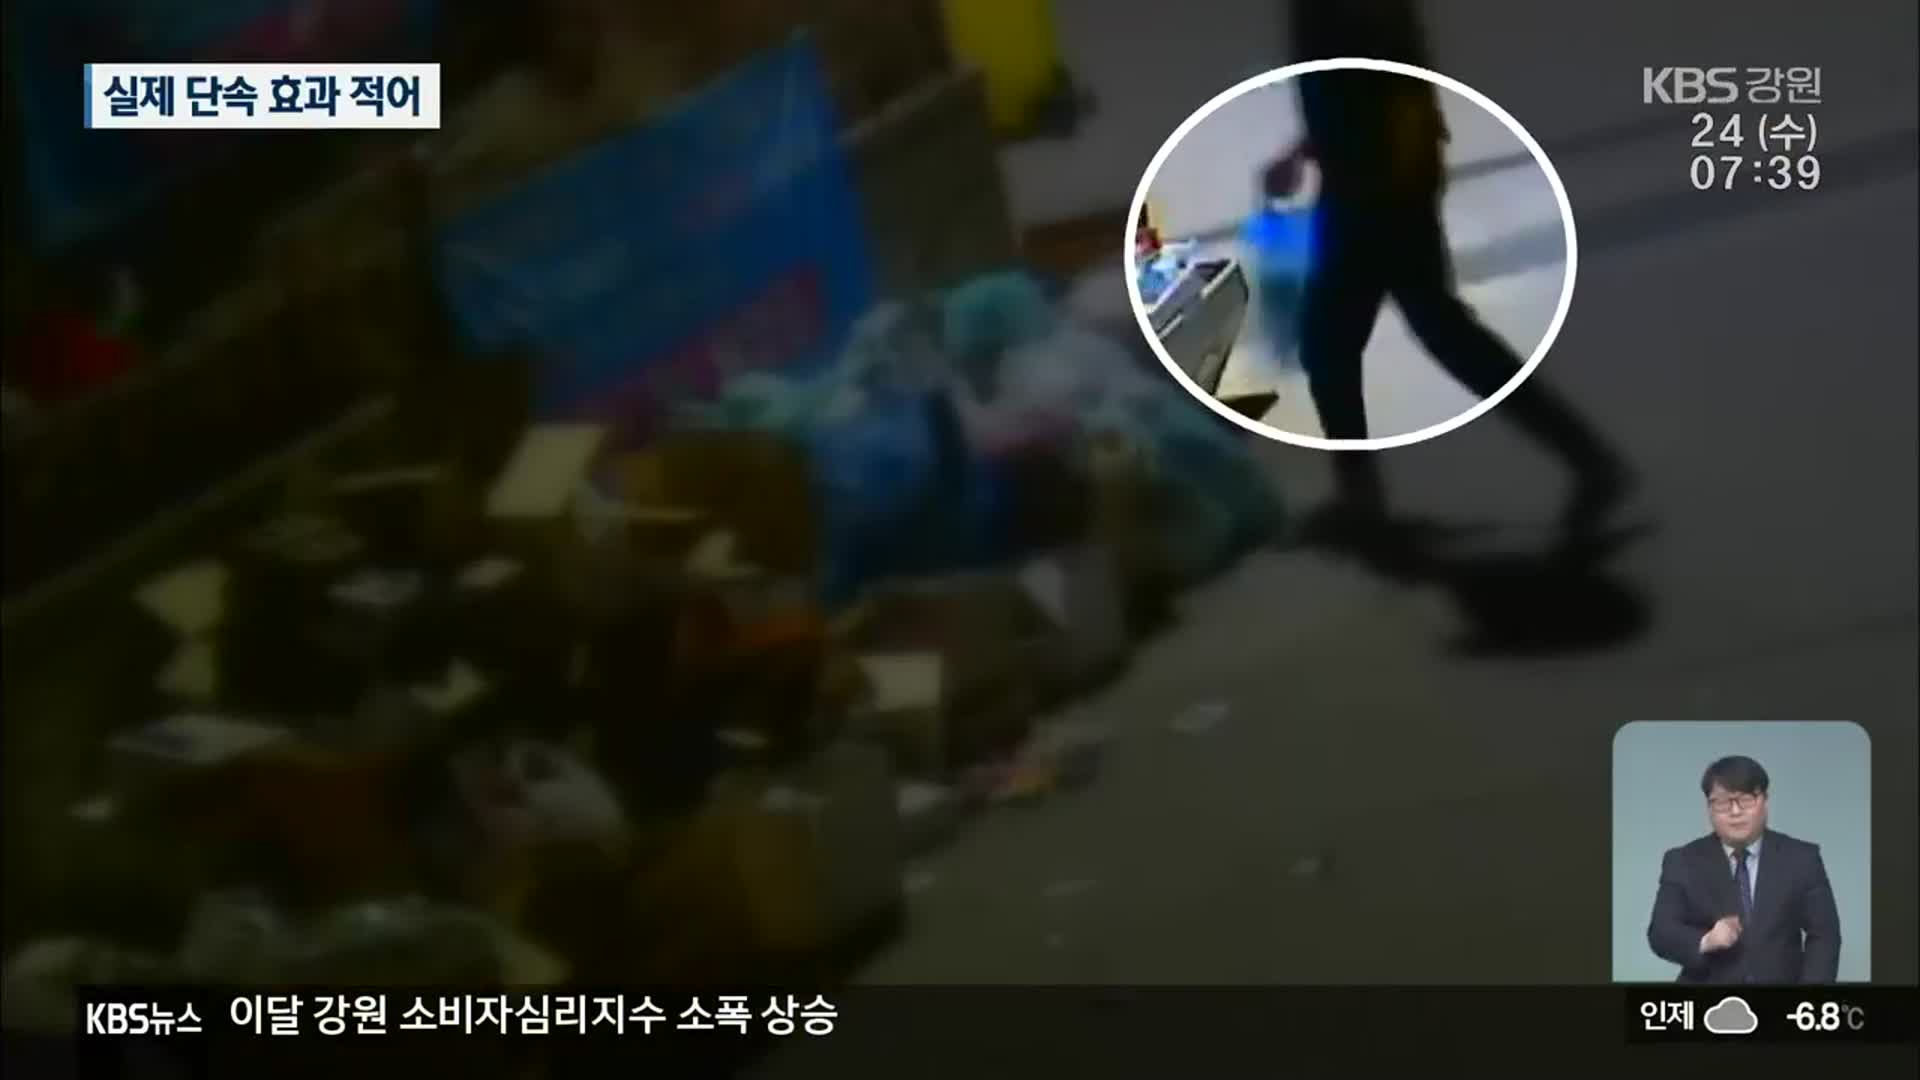 쓰레기 불법 투기 적발 못 하는 CCTV